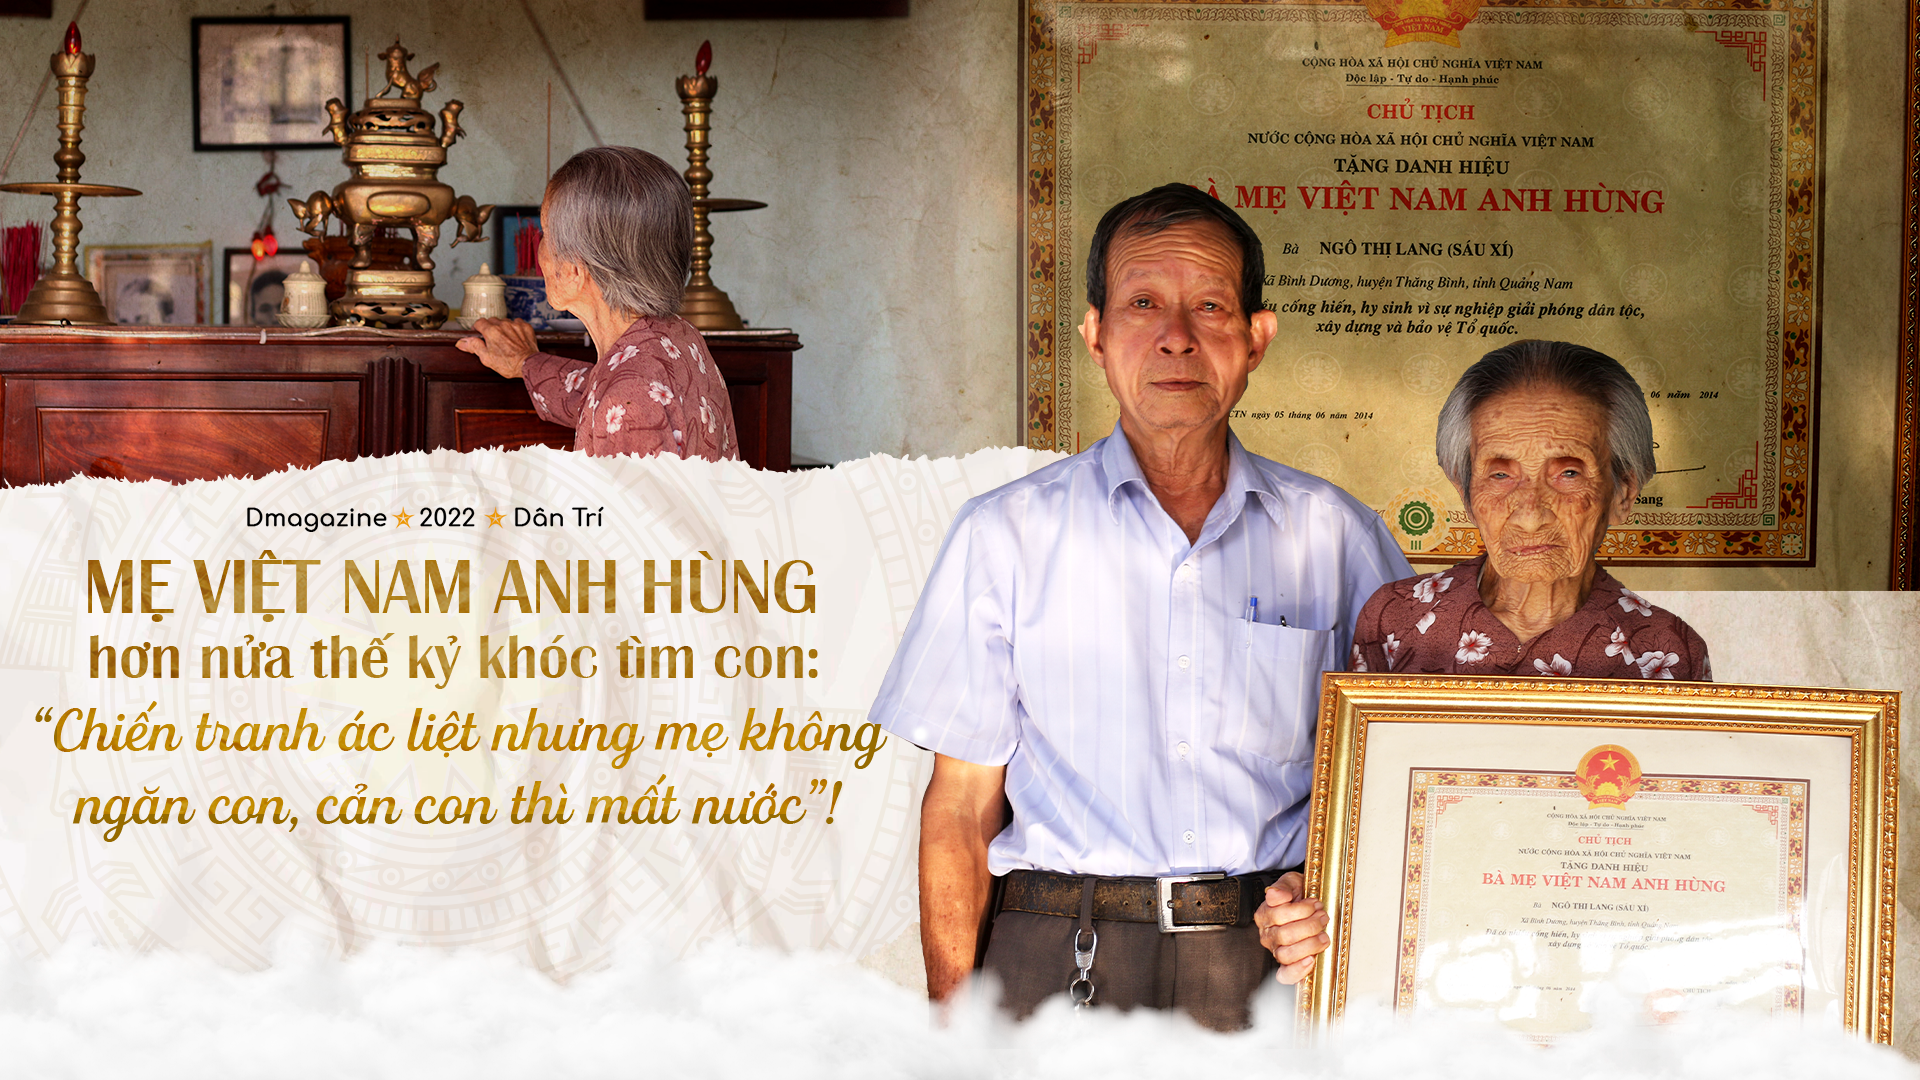 Mẹ Việt Nam anh hùng hơn nửa thế kỷ khóc tìm con: "Giữ con thì mất nước!"